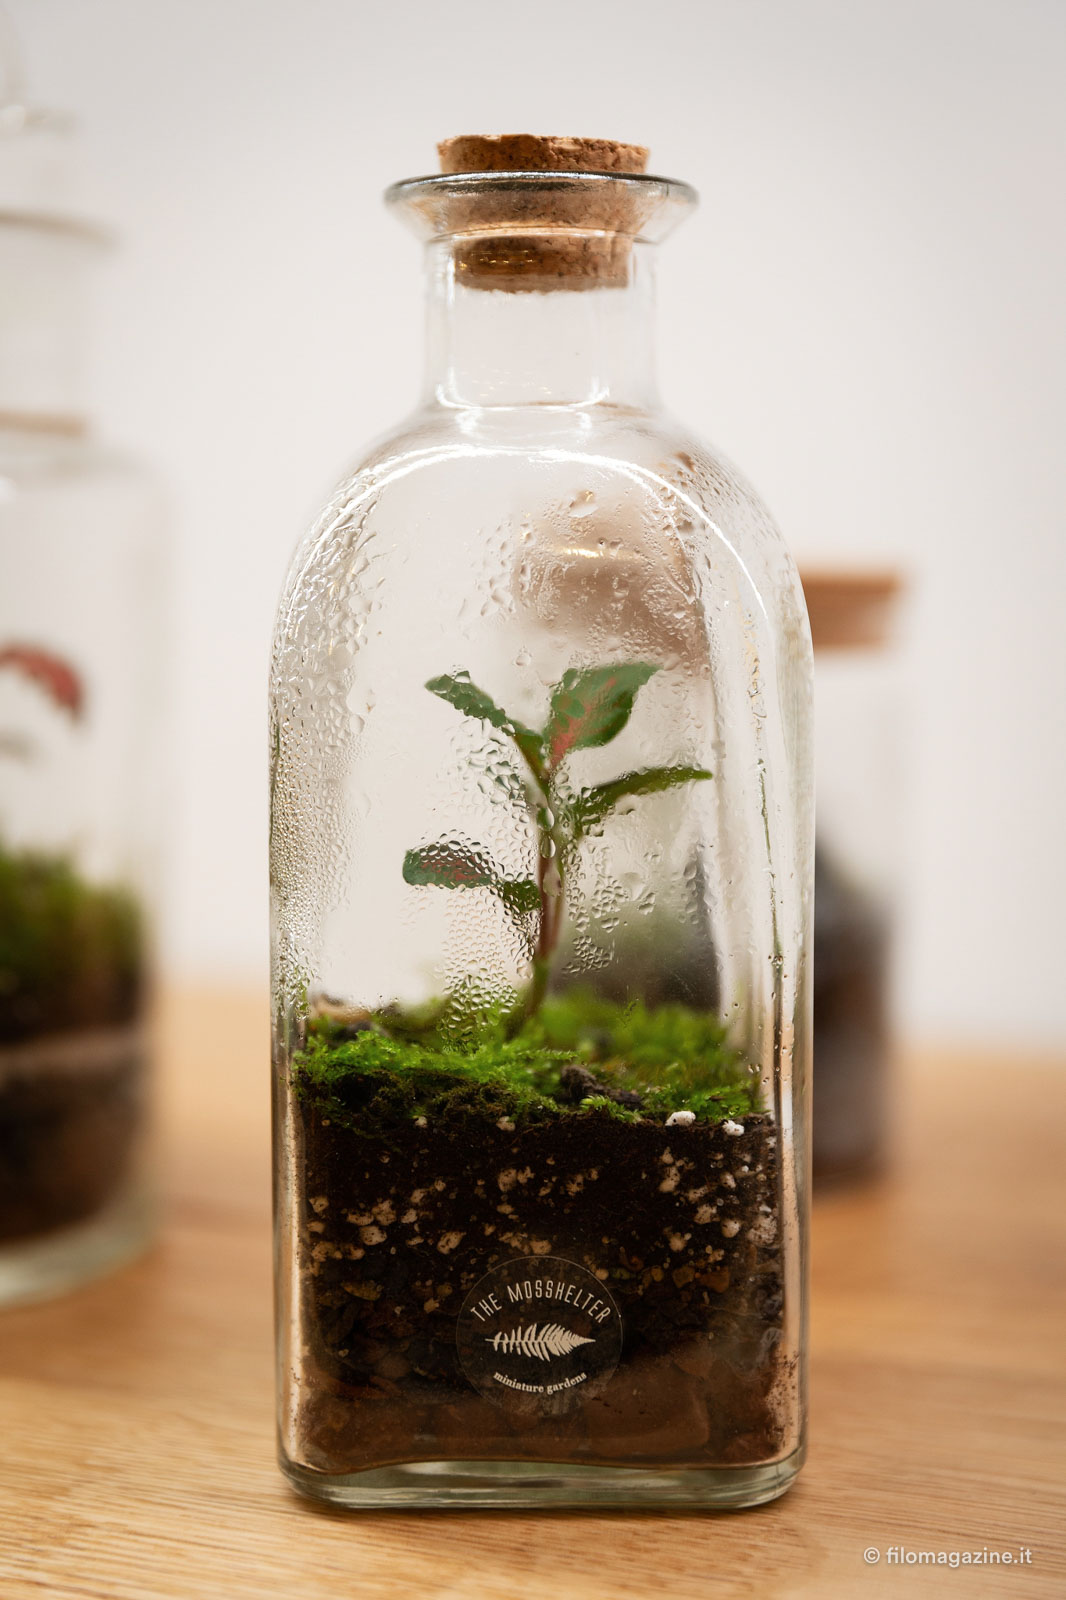 Terrarium: come creare piccoli giardini in contenitori di vetro